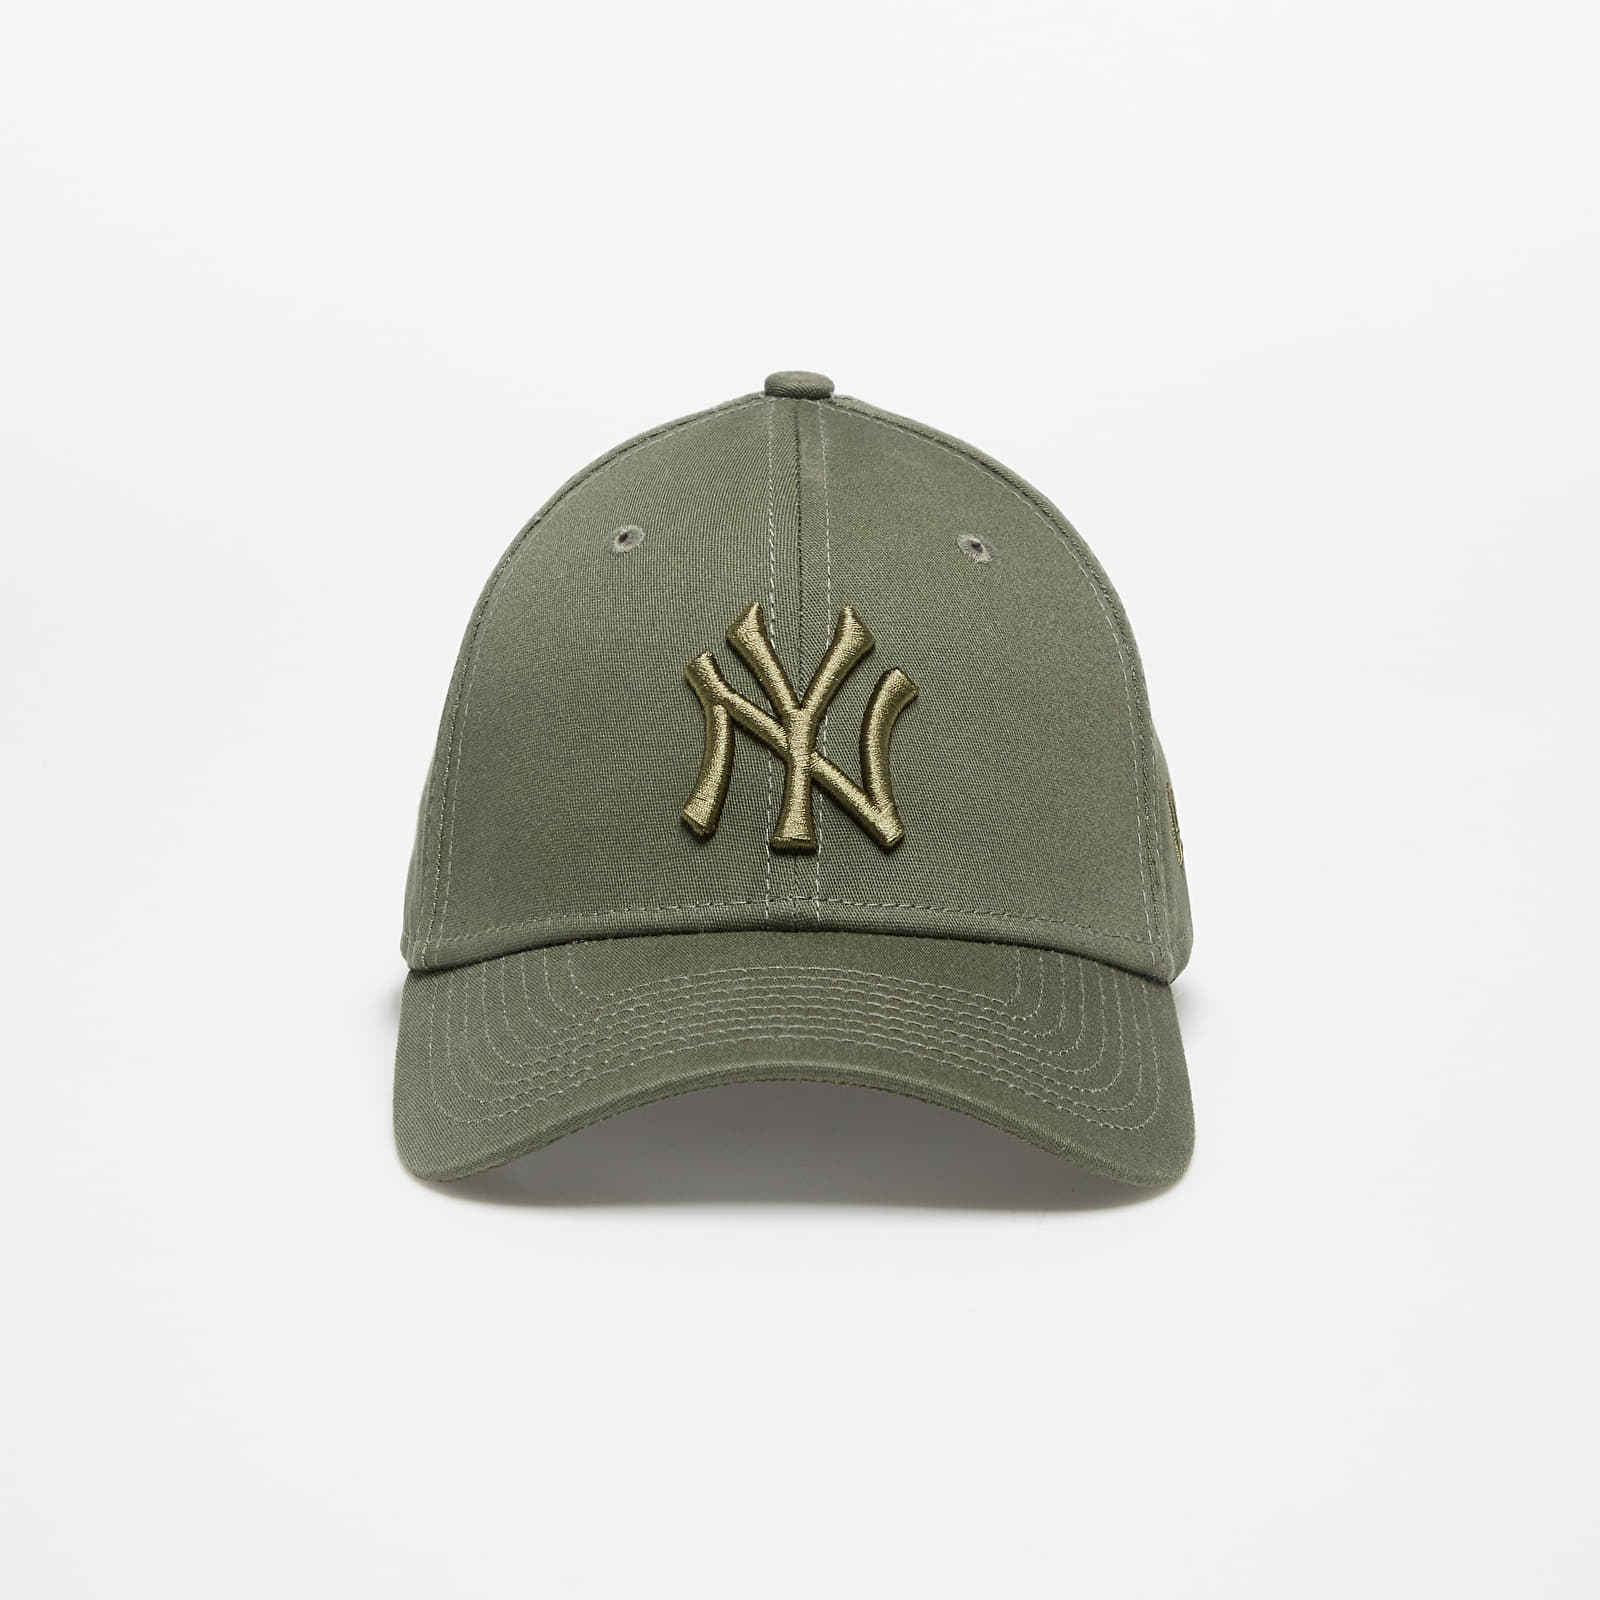 Καπέλα New Era New York Yankees League Essential Green 39THIRTY Stretch Fit New Olive